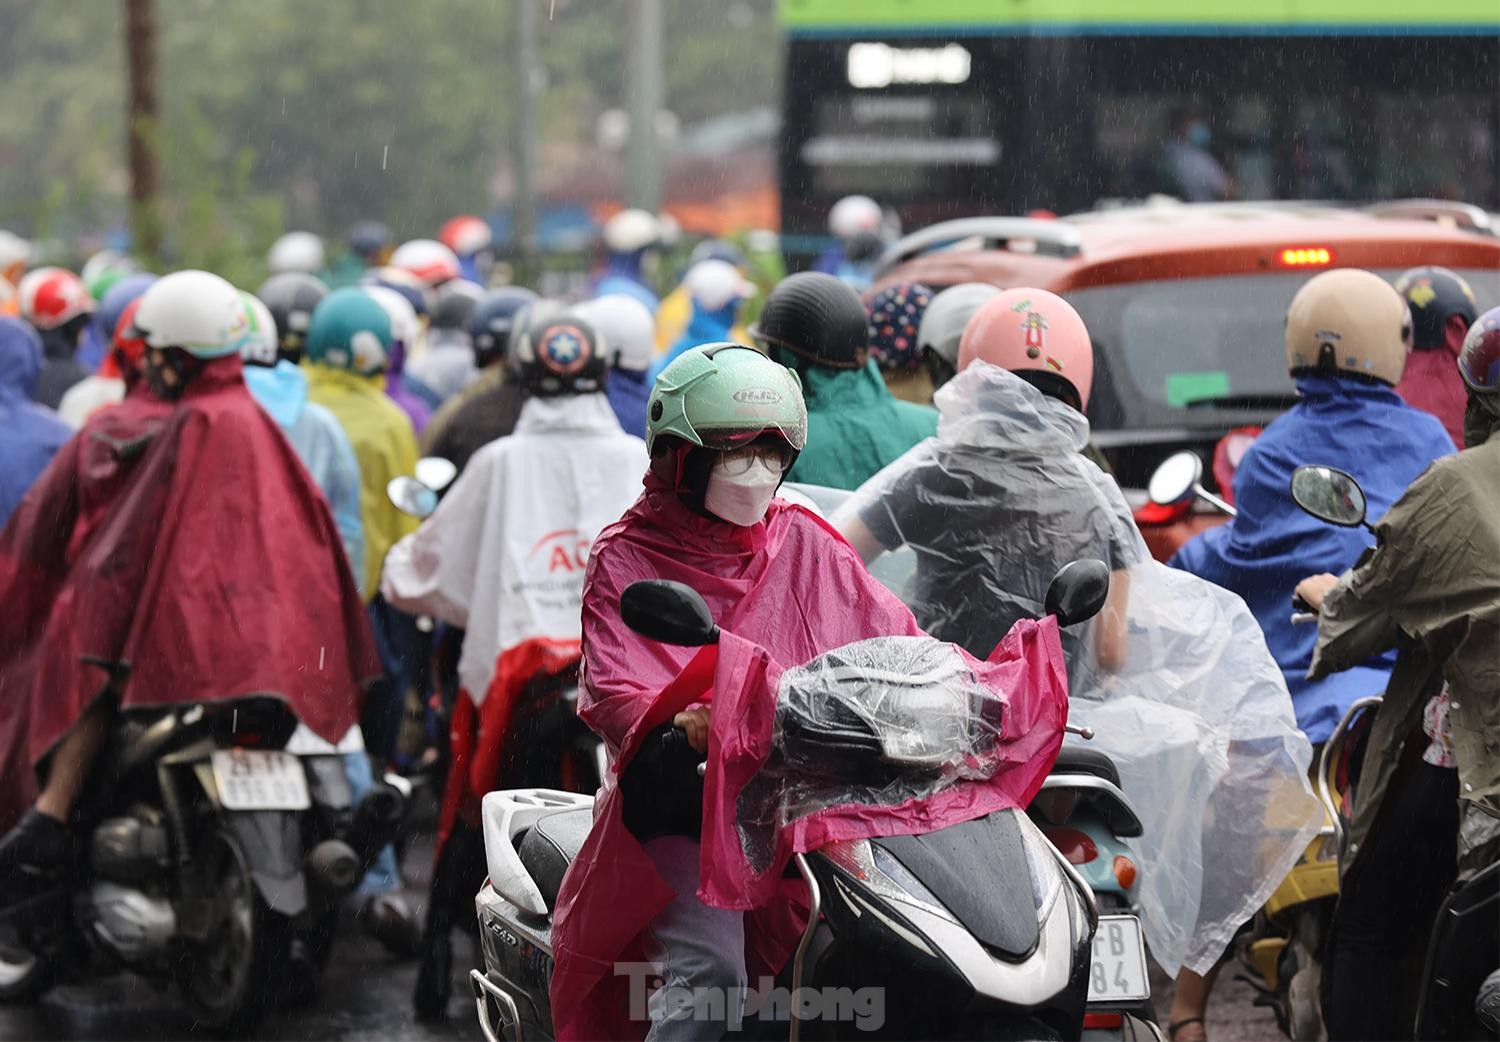 Gió mùa tràn về Hà Nội, biển người nhích từng bước giữa cơn mưa lúc sáng sớm - Ảnh 4.